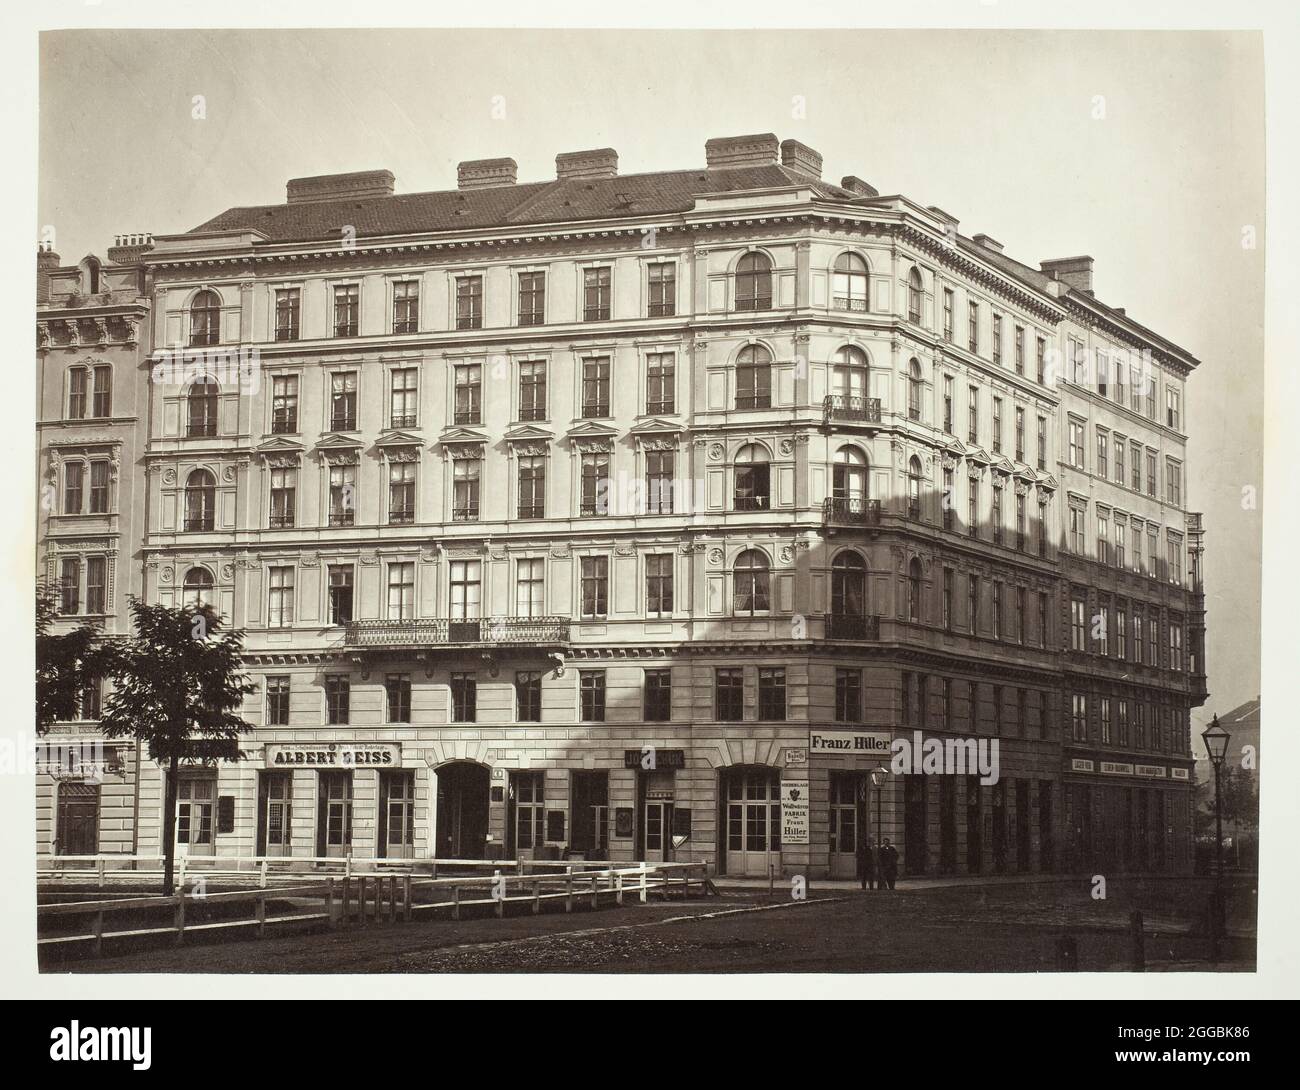 Rudolfs Platz n° 6, Zinshaus des Freyherrn J. von Mayer, 1860. Immeuble de Vienne. Imprimé albumine. Banque D'Images